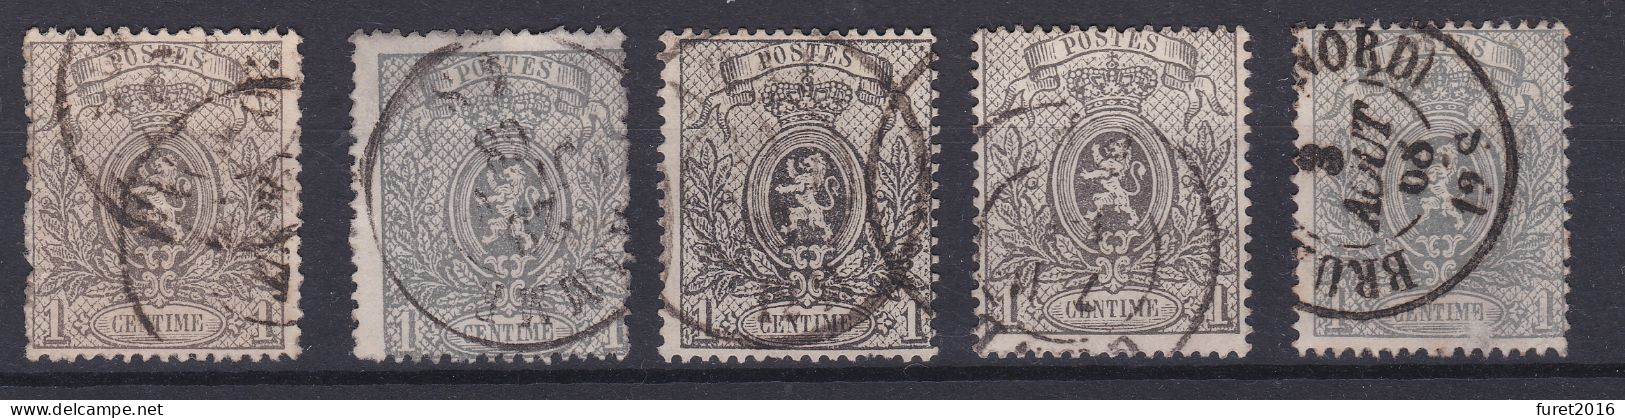 N° 23 : LOT De 10 Timbres Oblitérés COB 150.00 Dentelure à Identifier - 1866-1867 Coat Of Arms